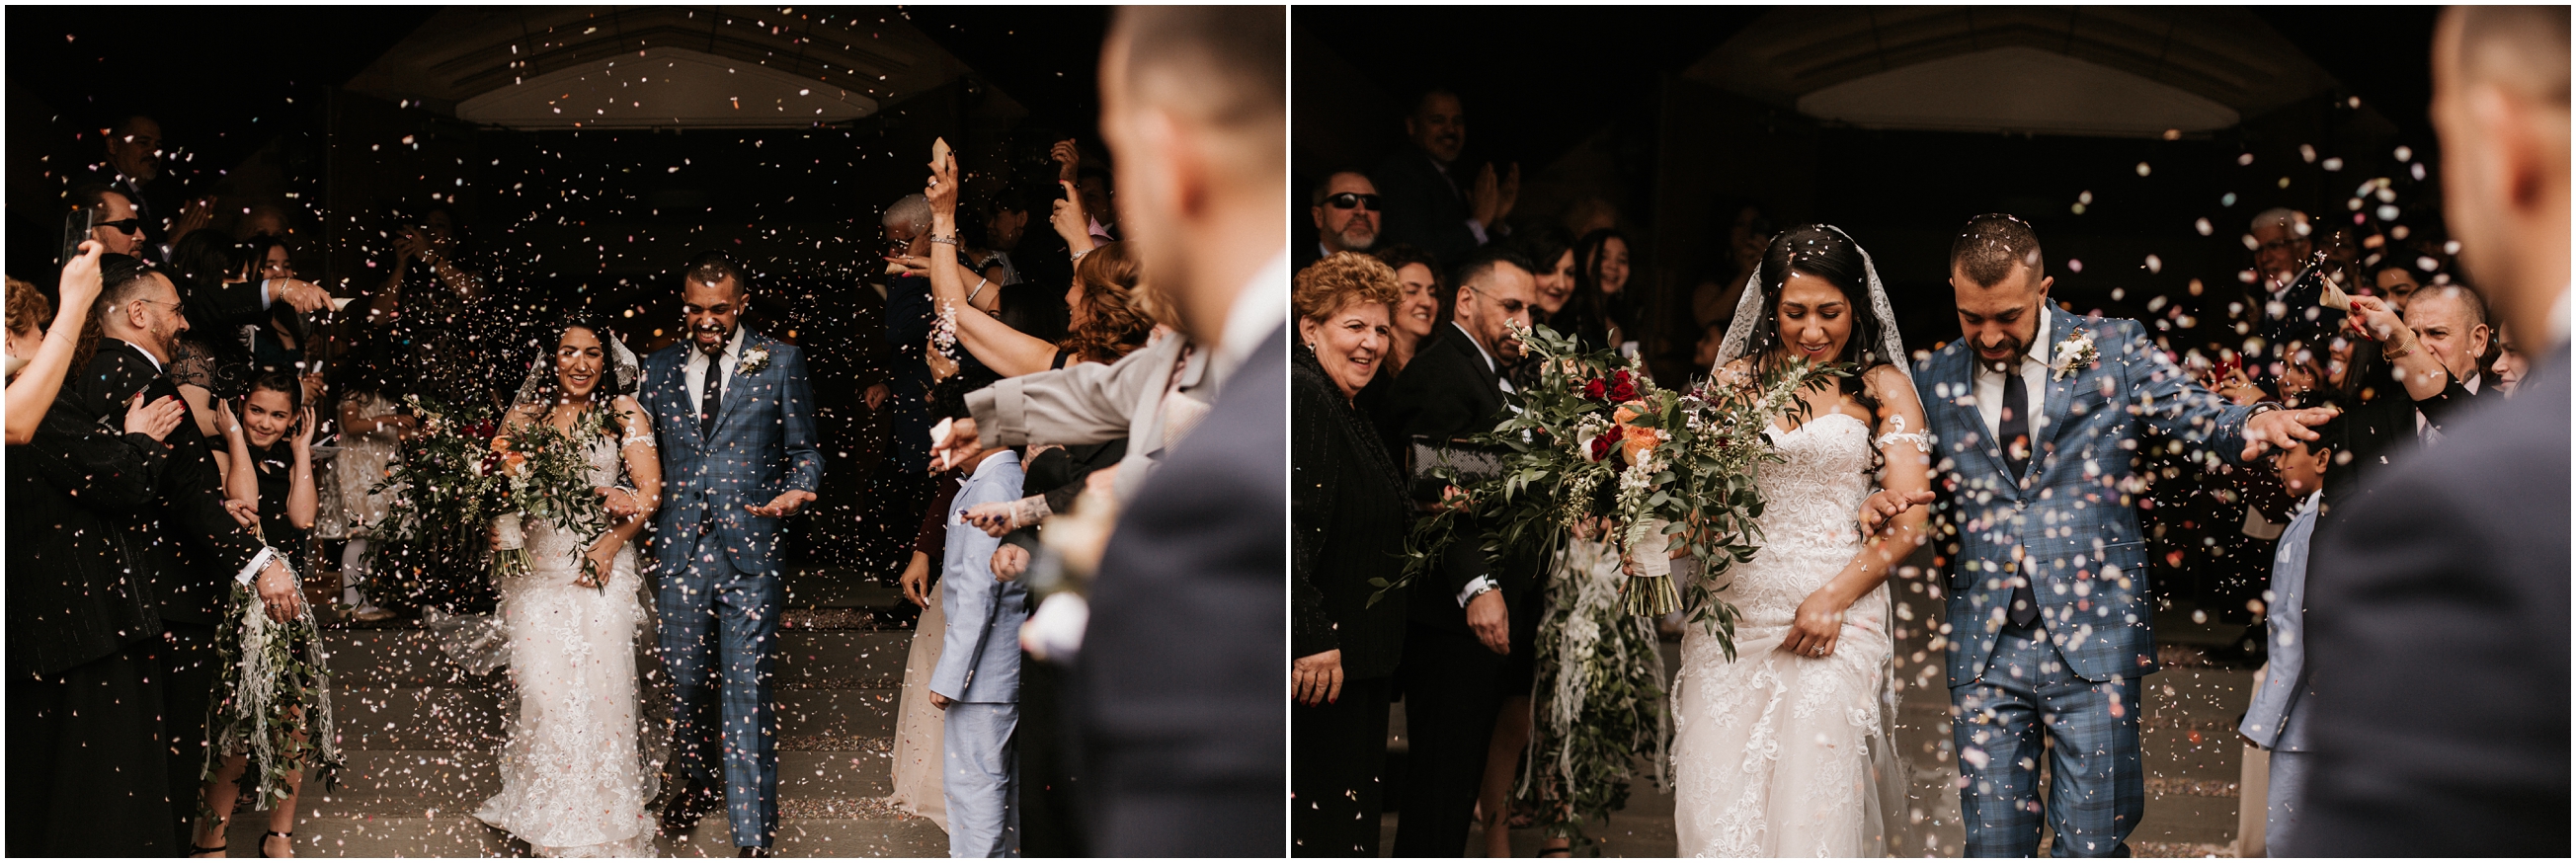 bride and groom wedding ceremony confetti exit